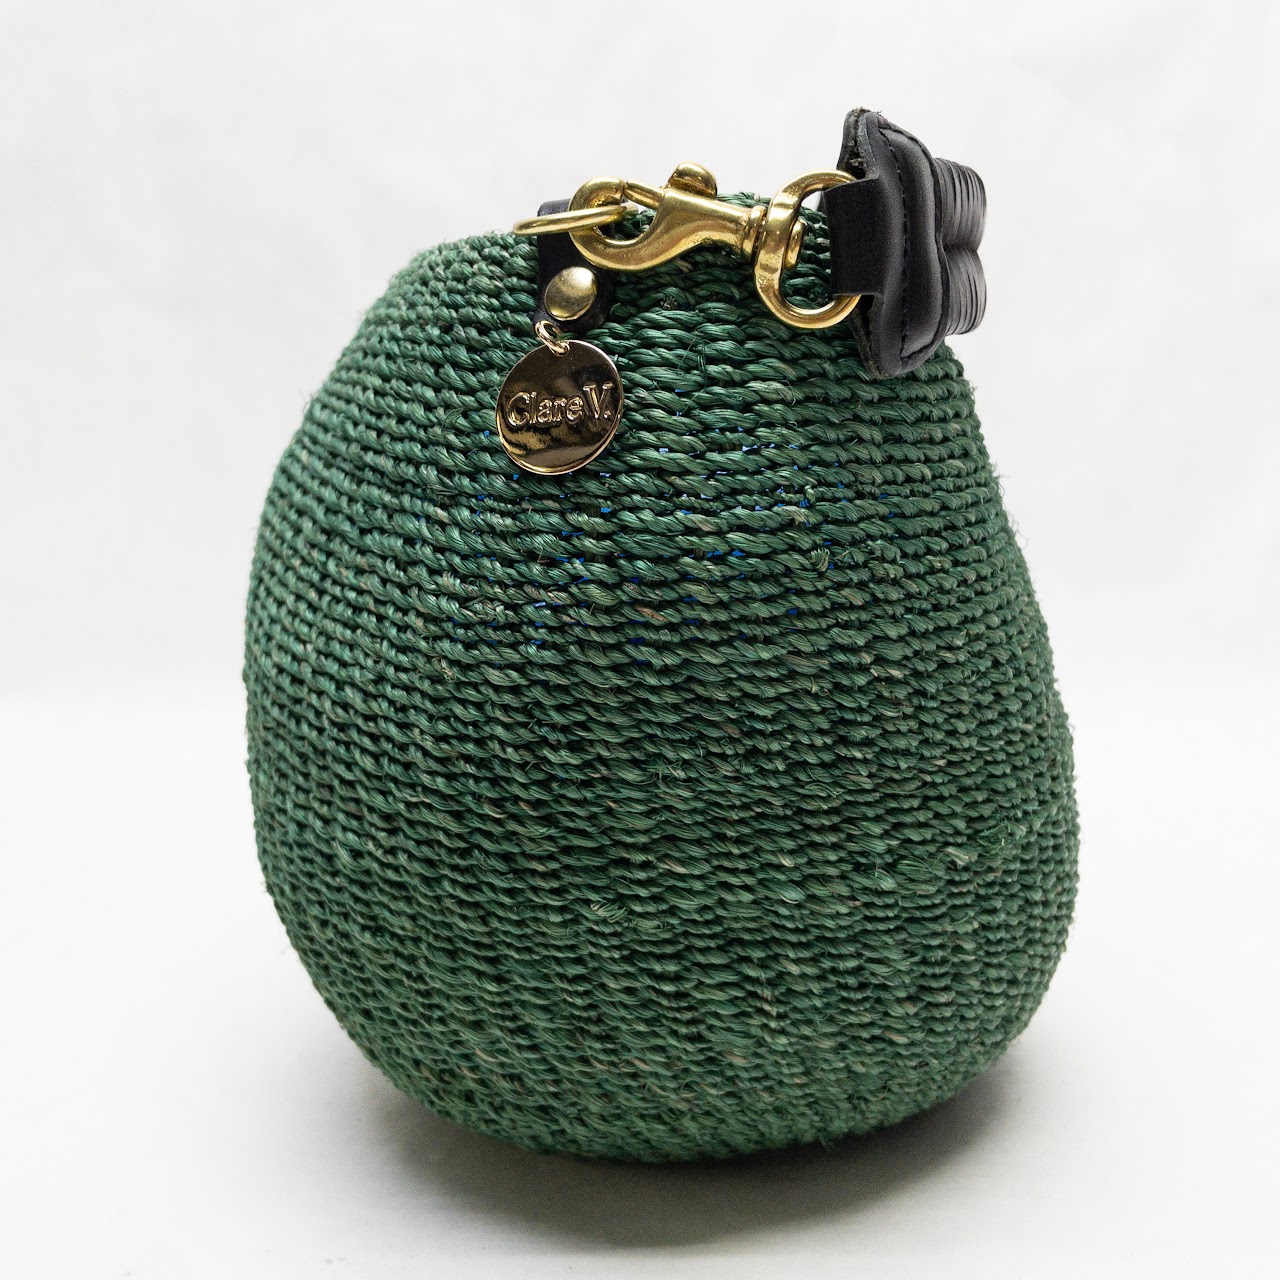 Clare V. Woven Pot de Miel Bag - Neutrals Bucket Bags, Handbags